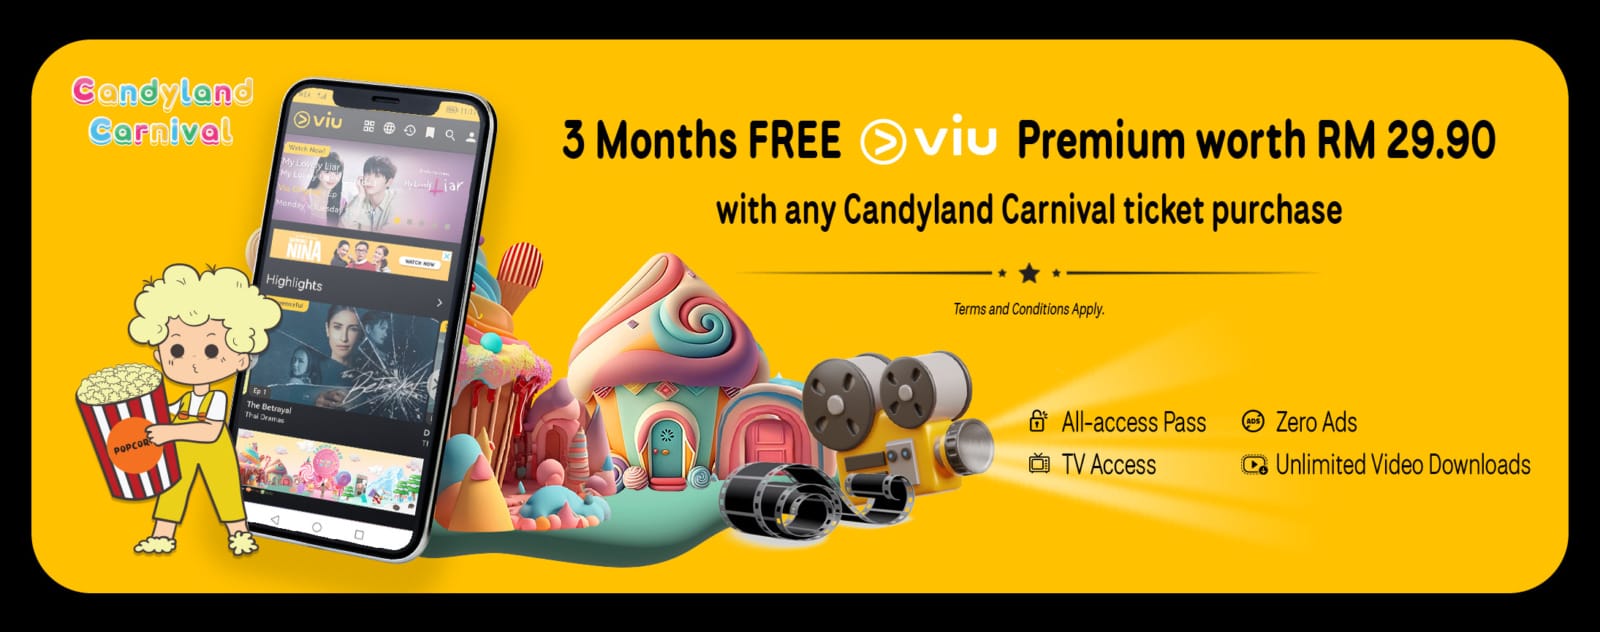 Candyland Carnival VIU R5